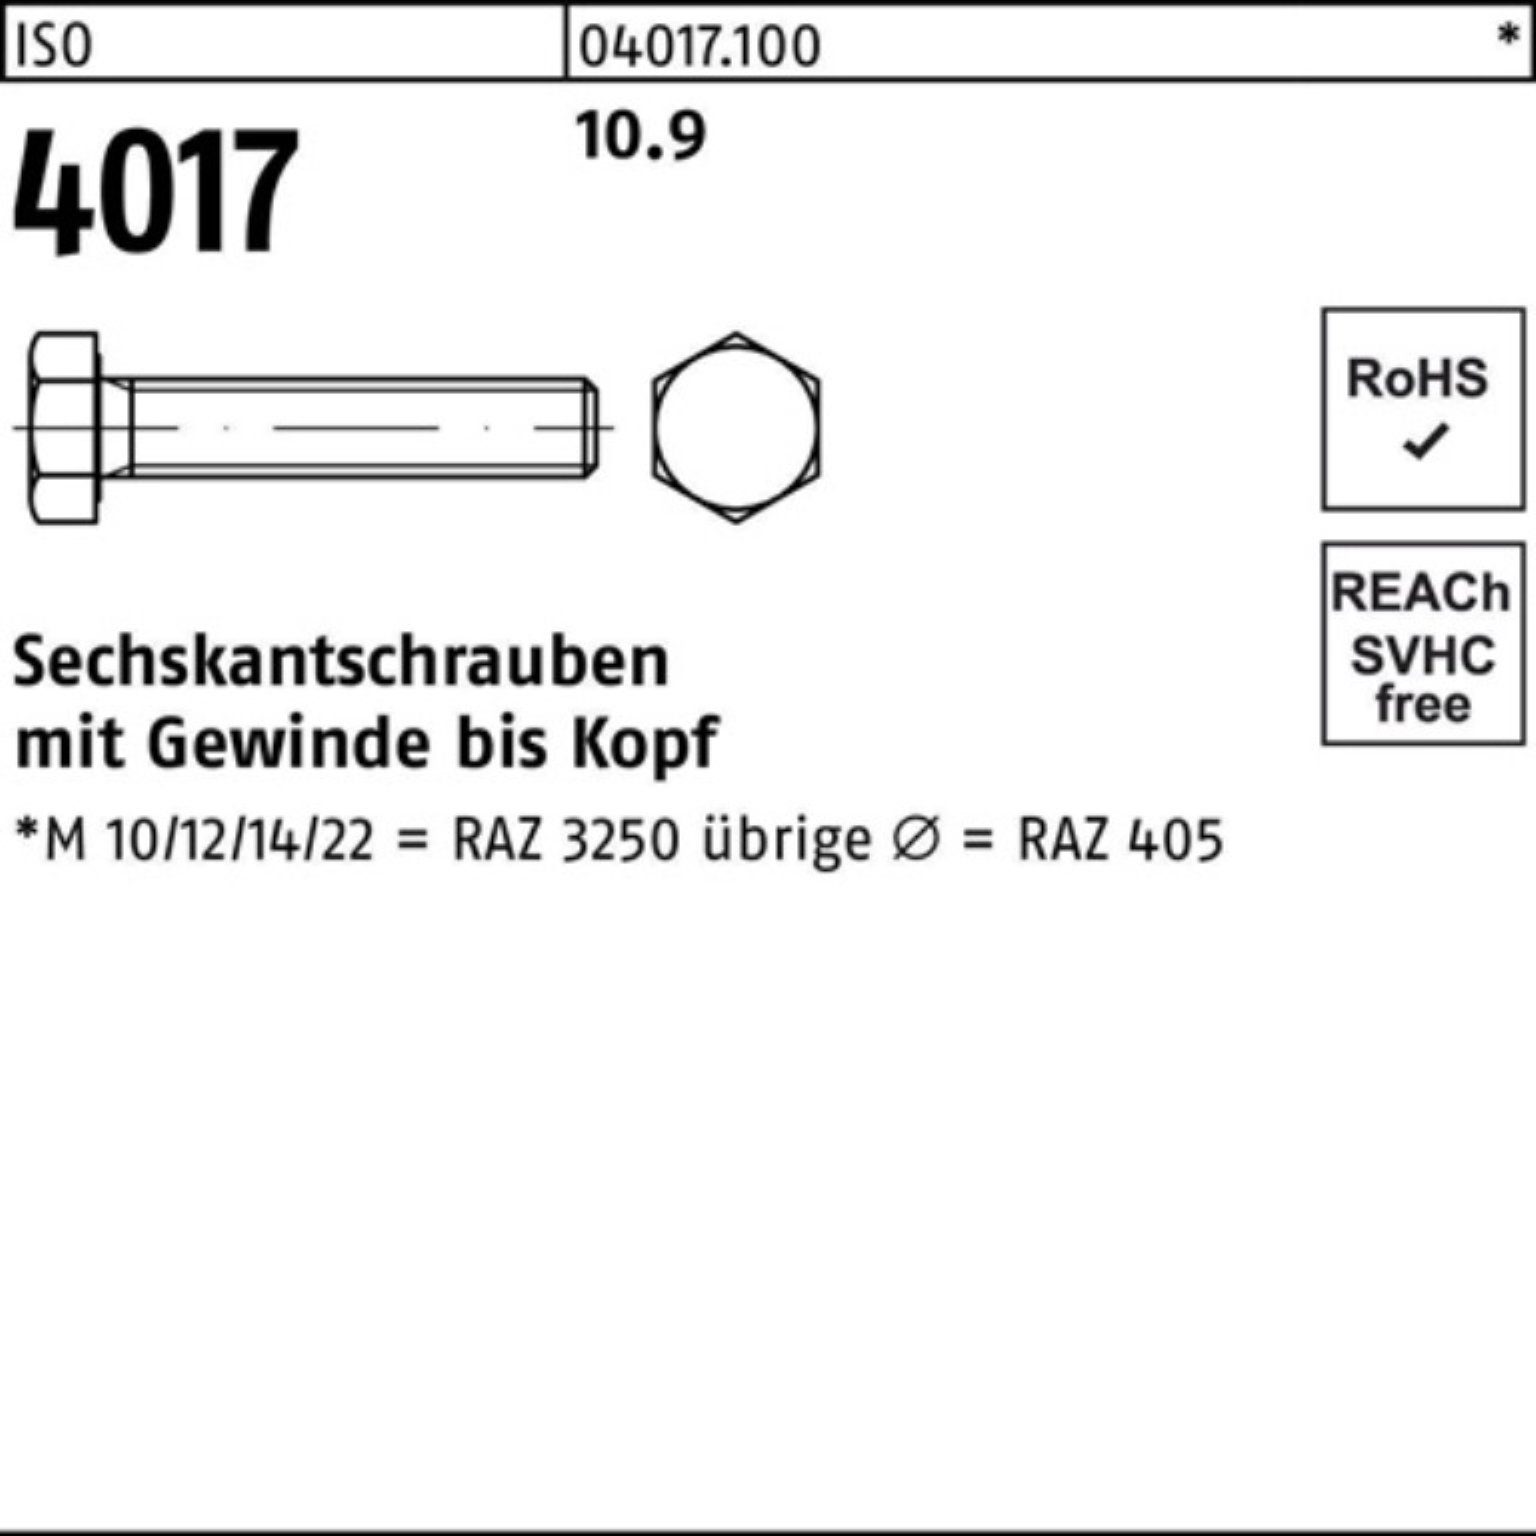 4 ISO VG 110 Sechskantschraube Stück 4017 Bufab M24x 10 10.9 Sechskantschraube 100er Pack ISO